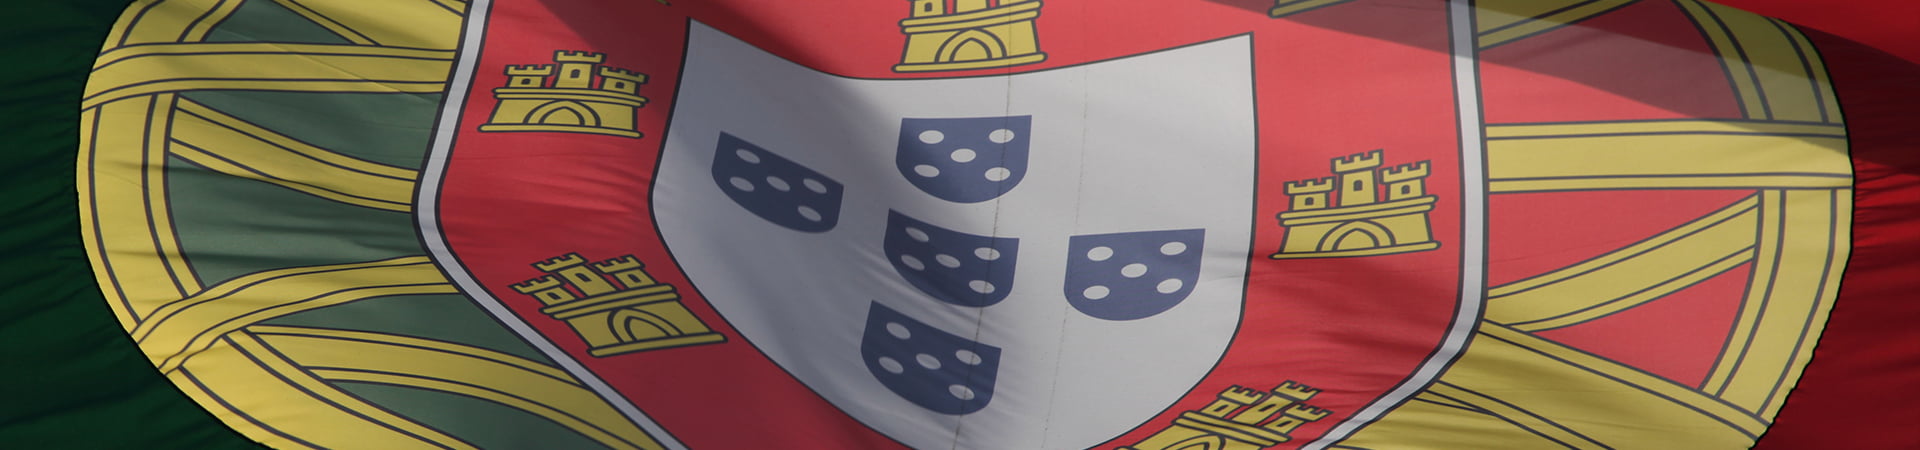 Imagem da bandeira portuguesa